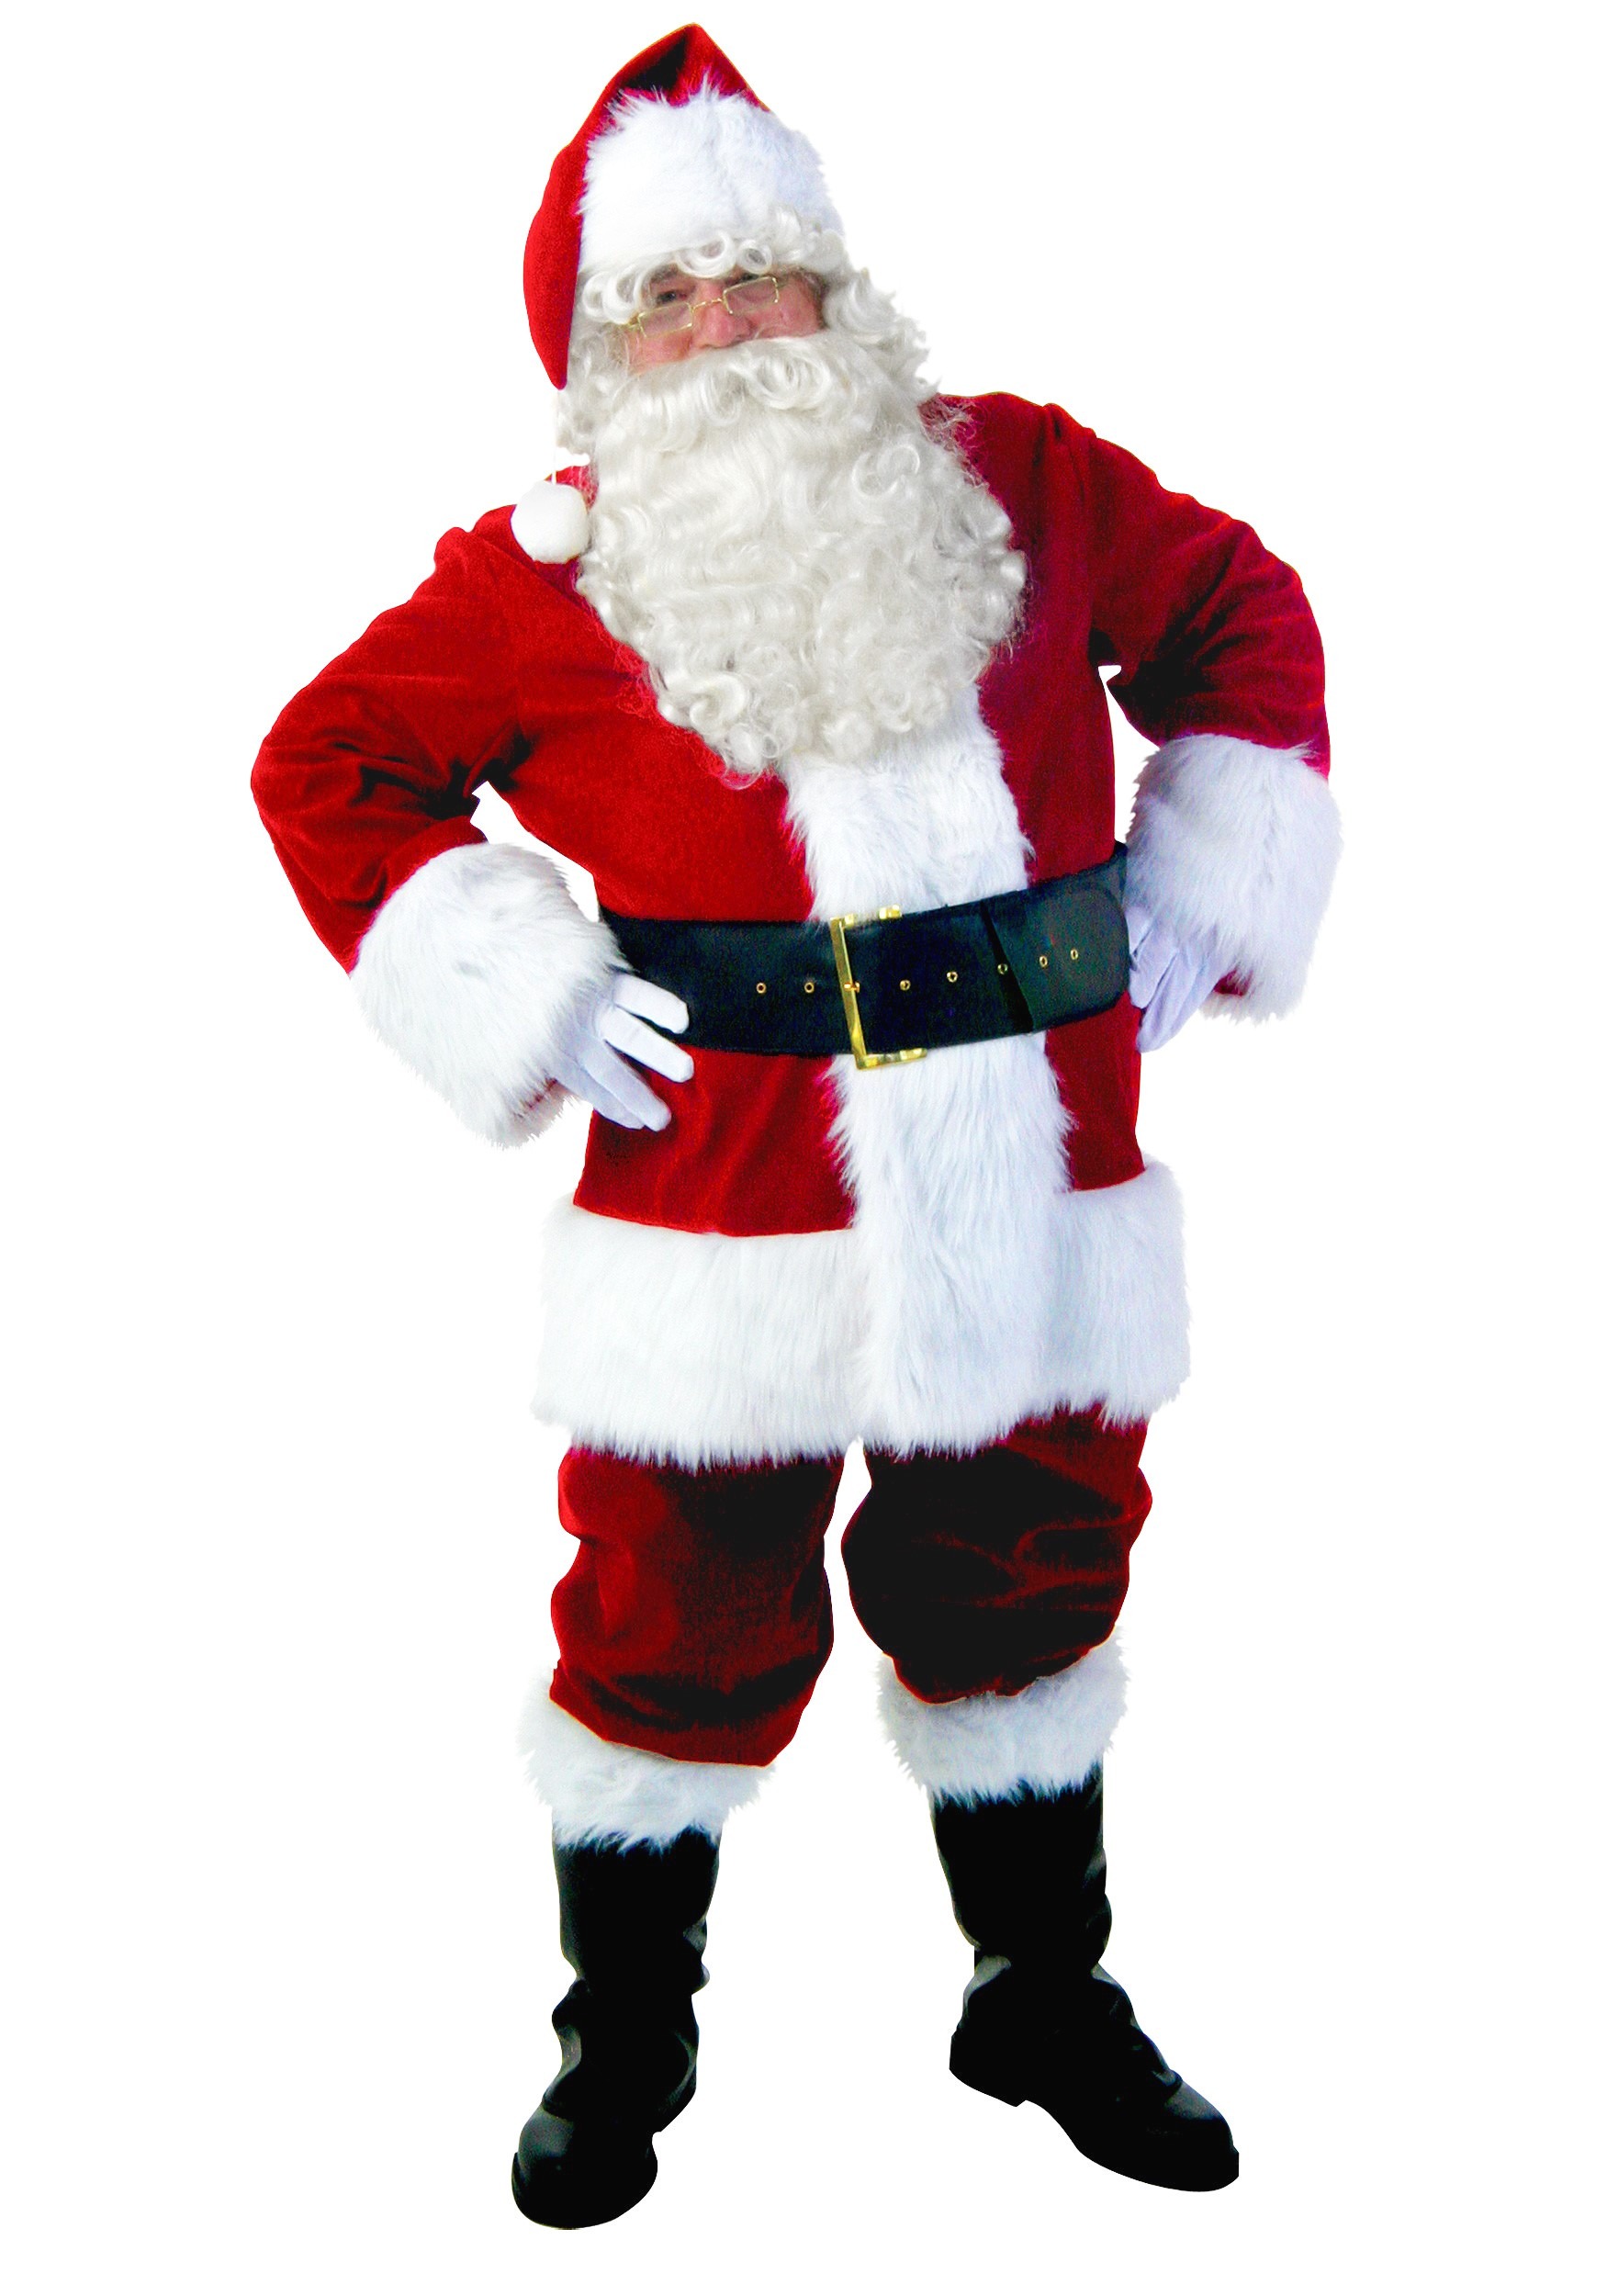 Plus Size Premiere Santa Suit Costume - image 1 of 1